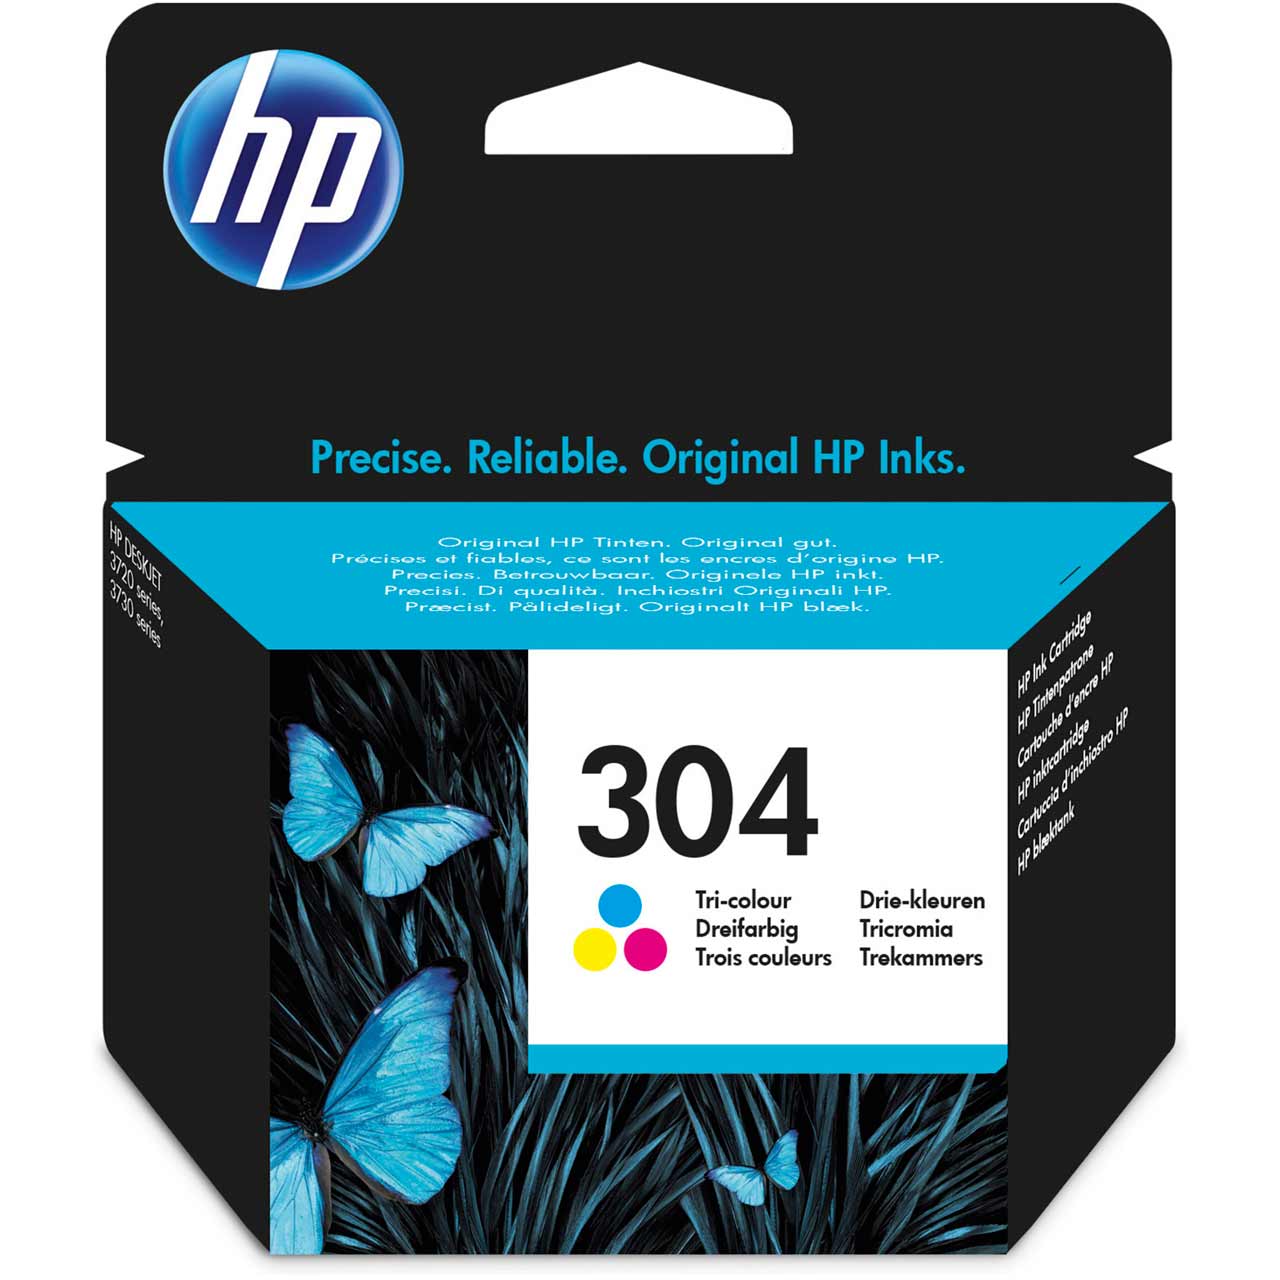 HP 304 Tri-color Original Ink Cartridge Review